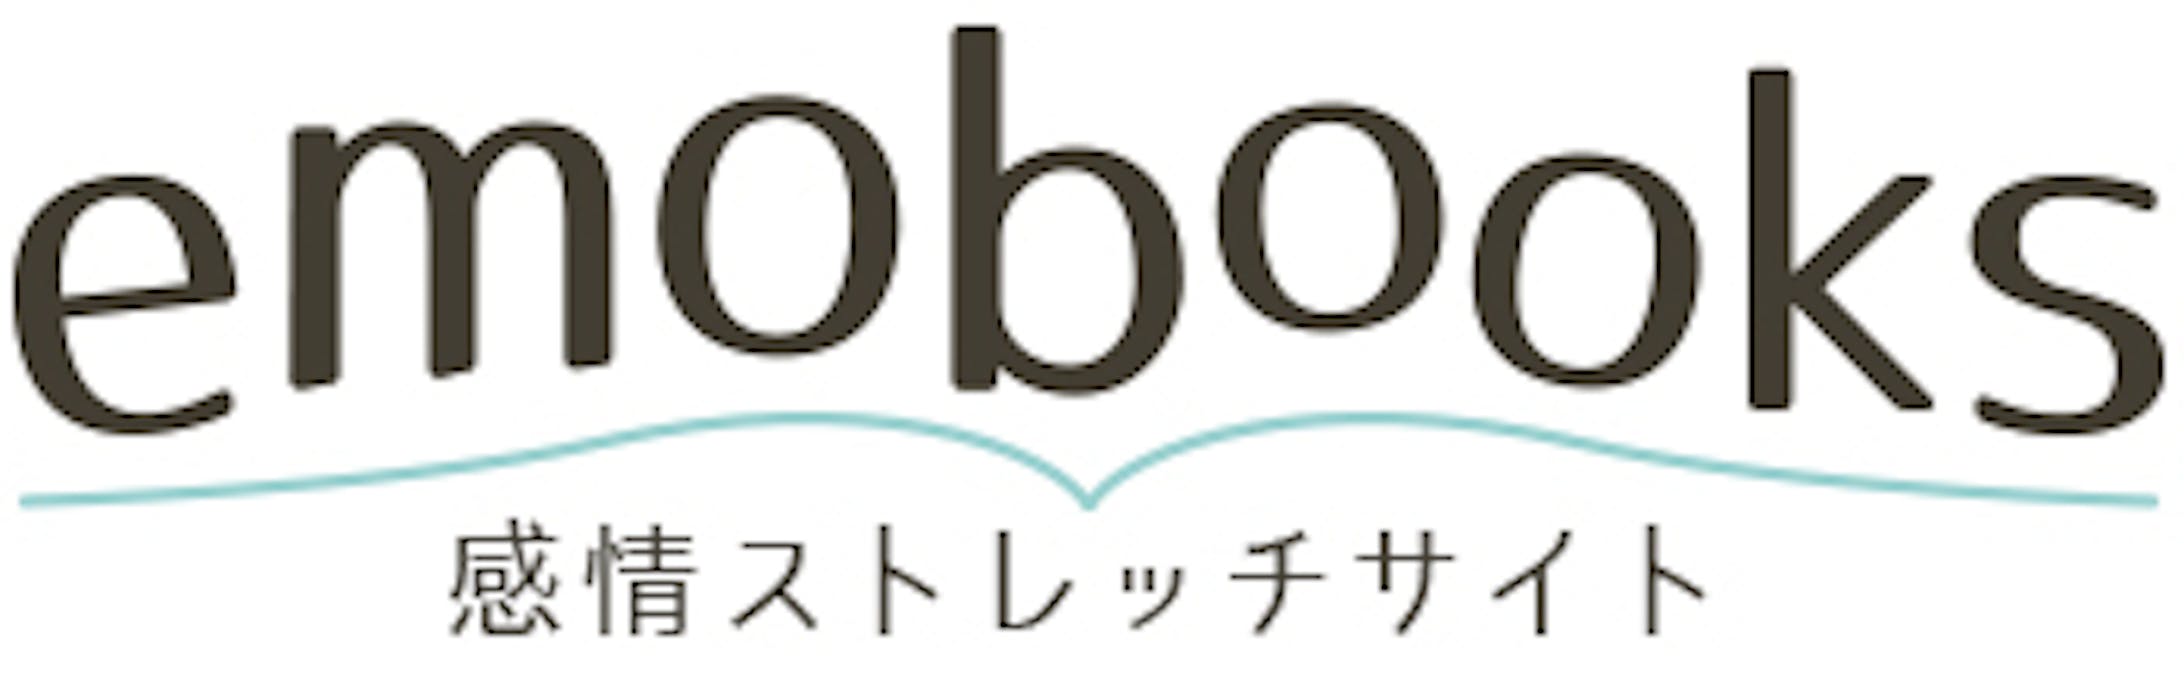 emobooks LOGO-1